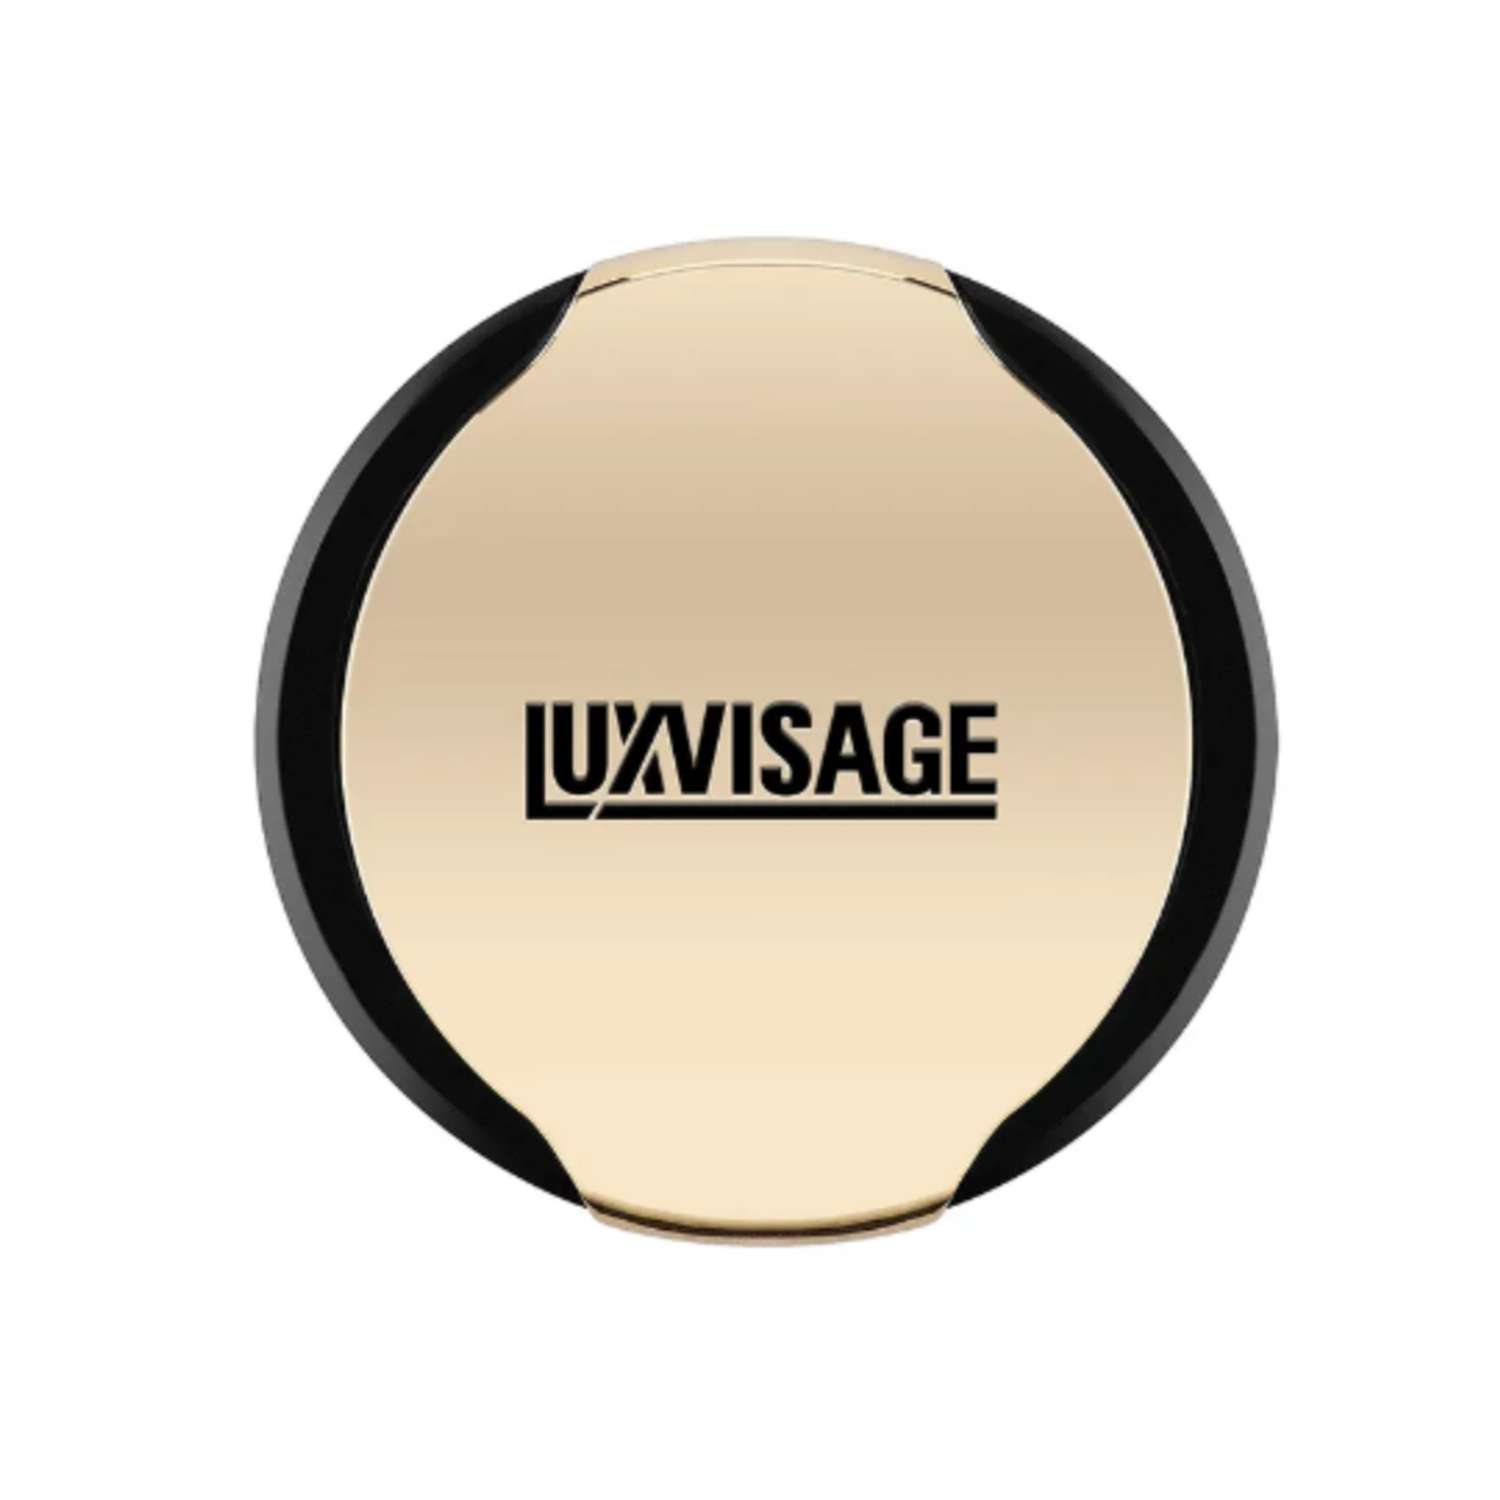 Пудра для лица Luxvisage компактная матирующая тон 11 светлый опалово-розовый - фото 2